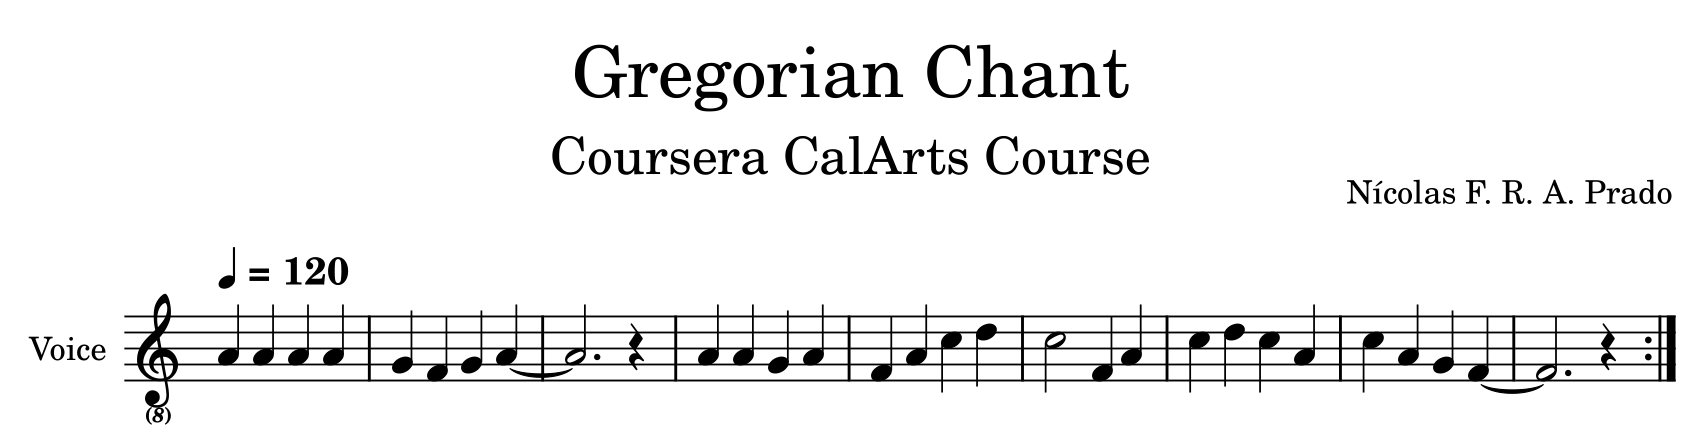 Gregorian chant melody music sheet